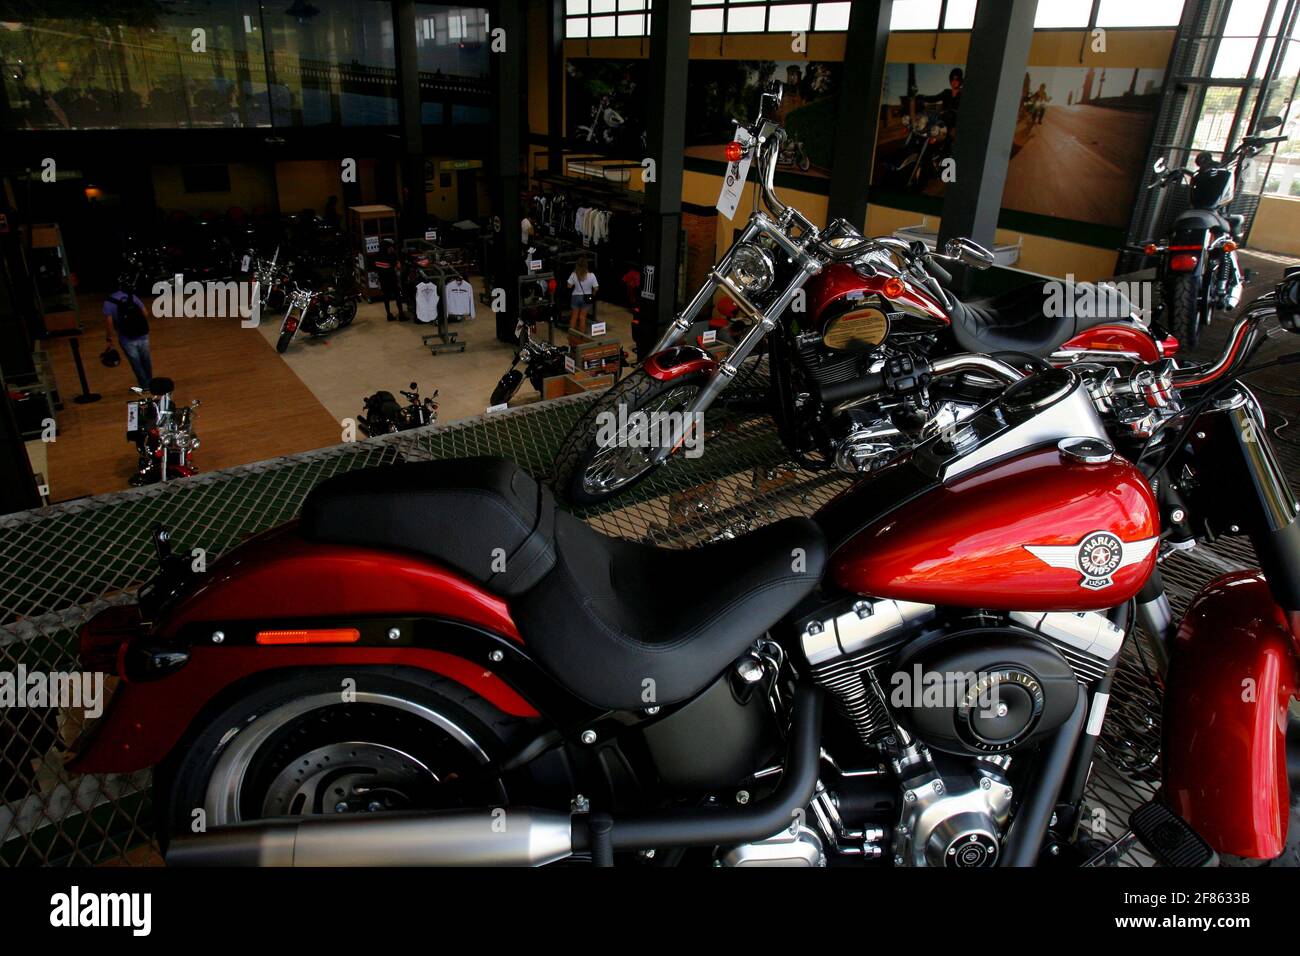 Harley Davidson Store Stockfotos Und Bilder Kaufen Alamy